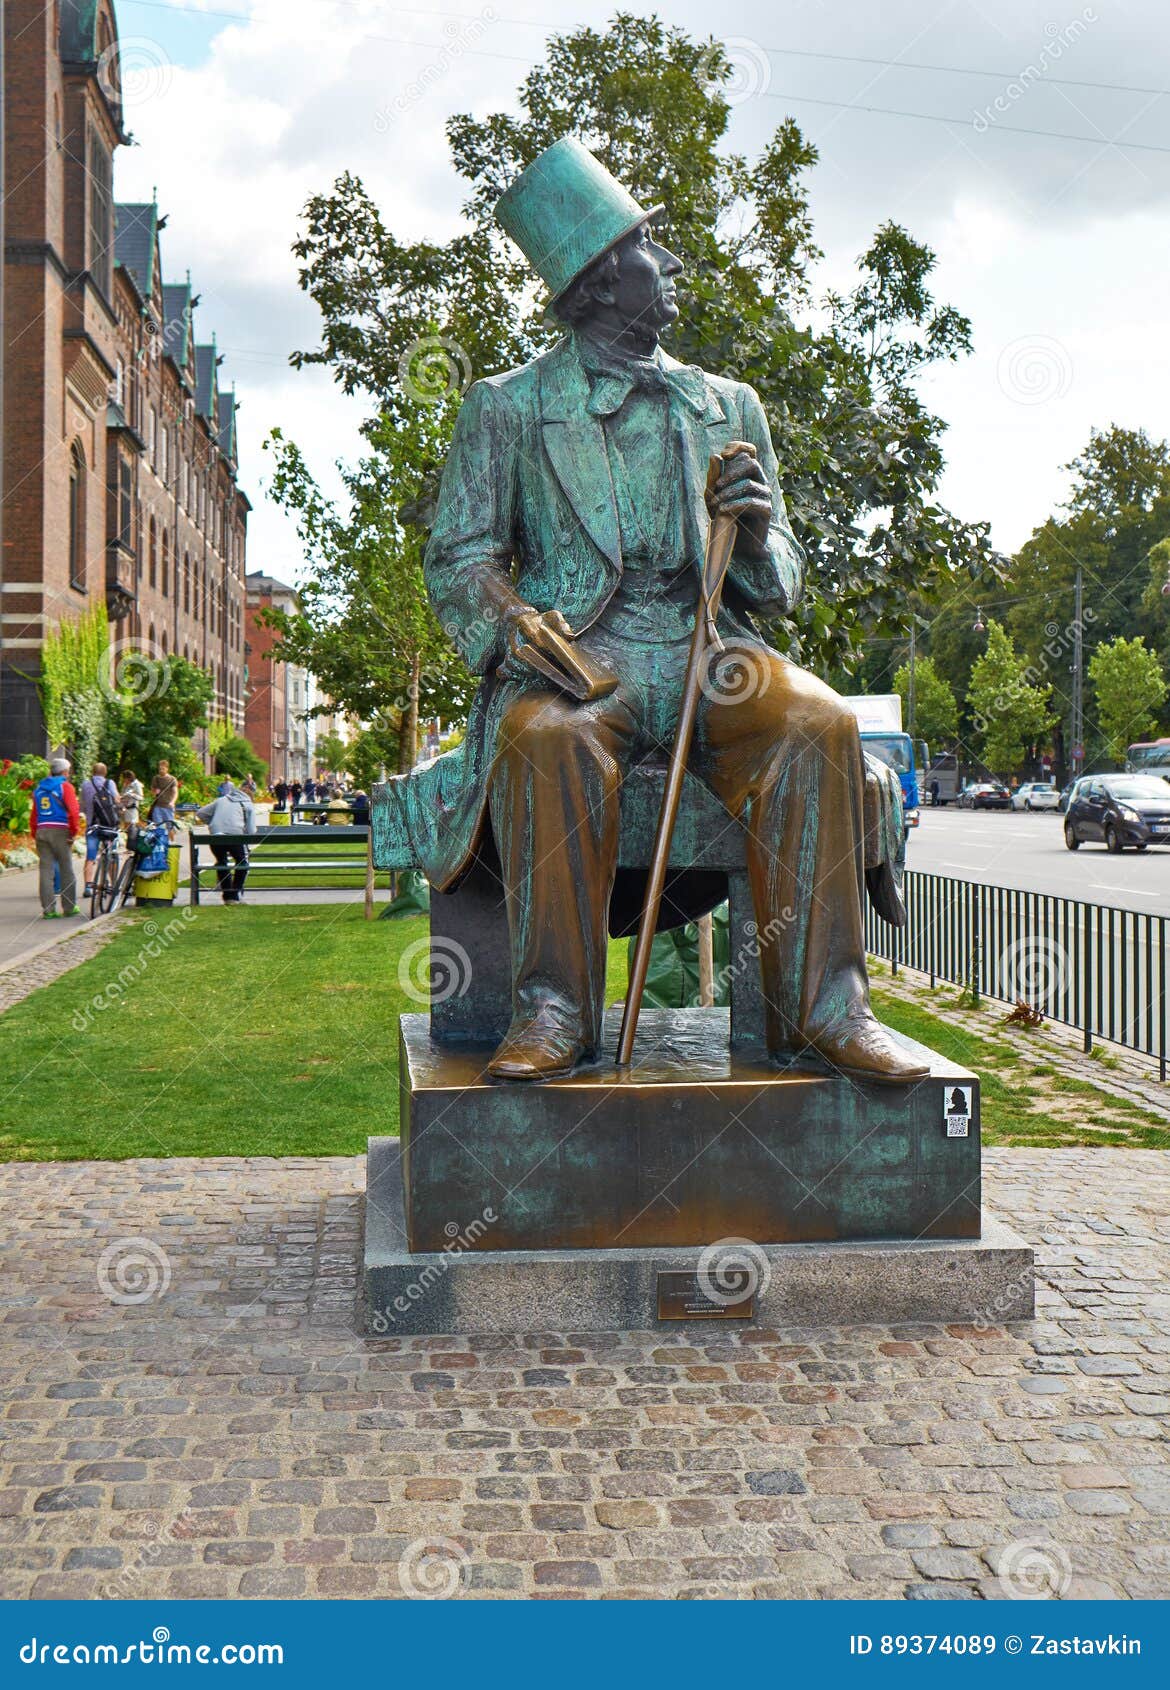 Hans Christian Andersen's Copenhagen